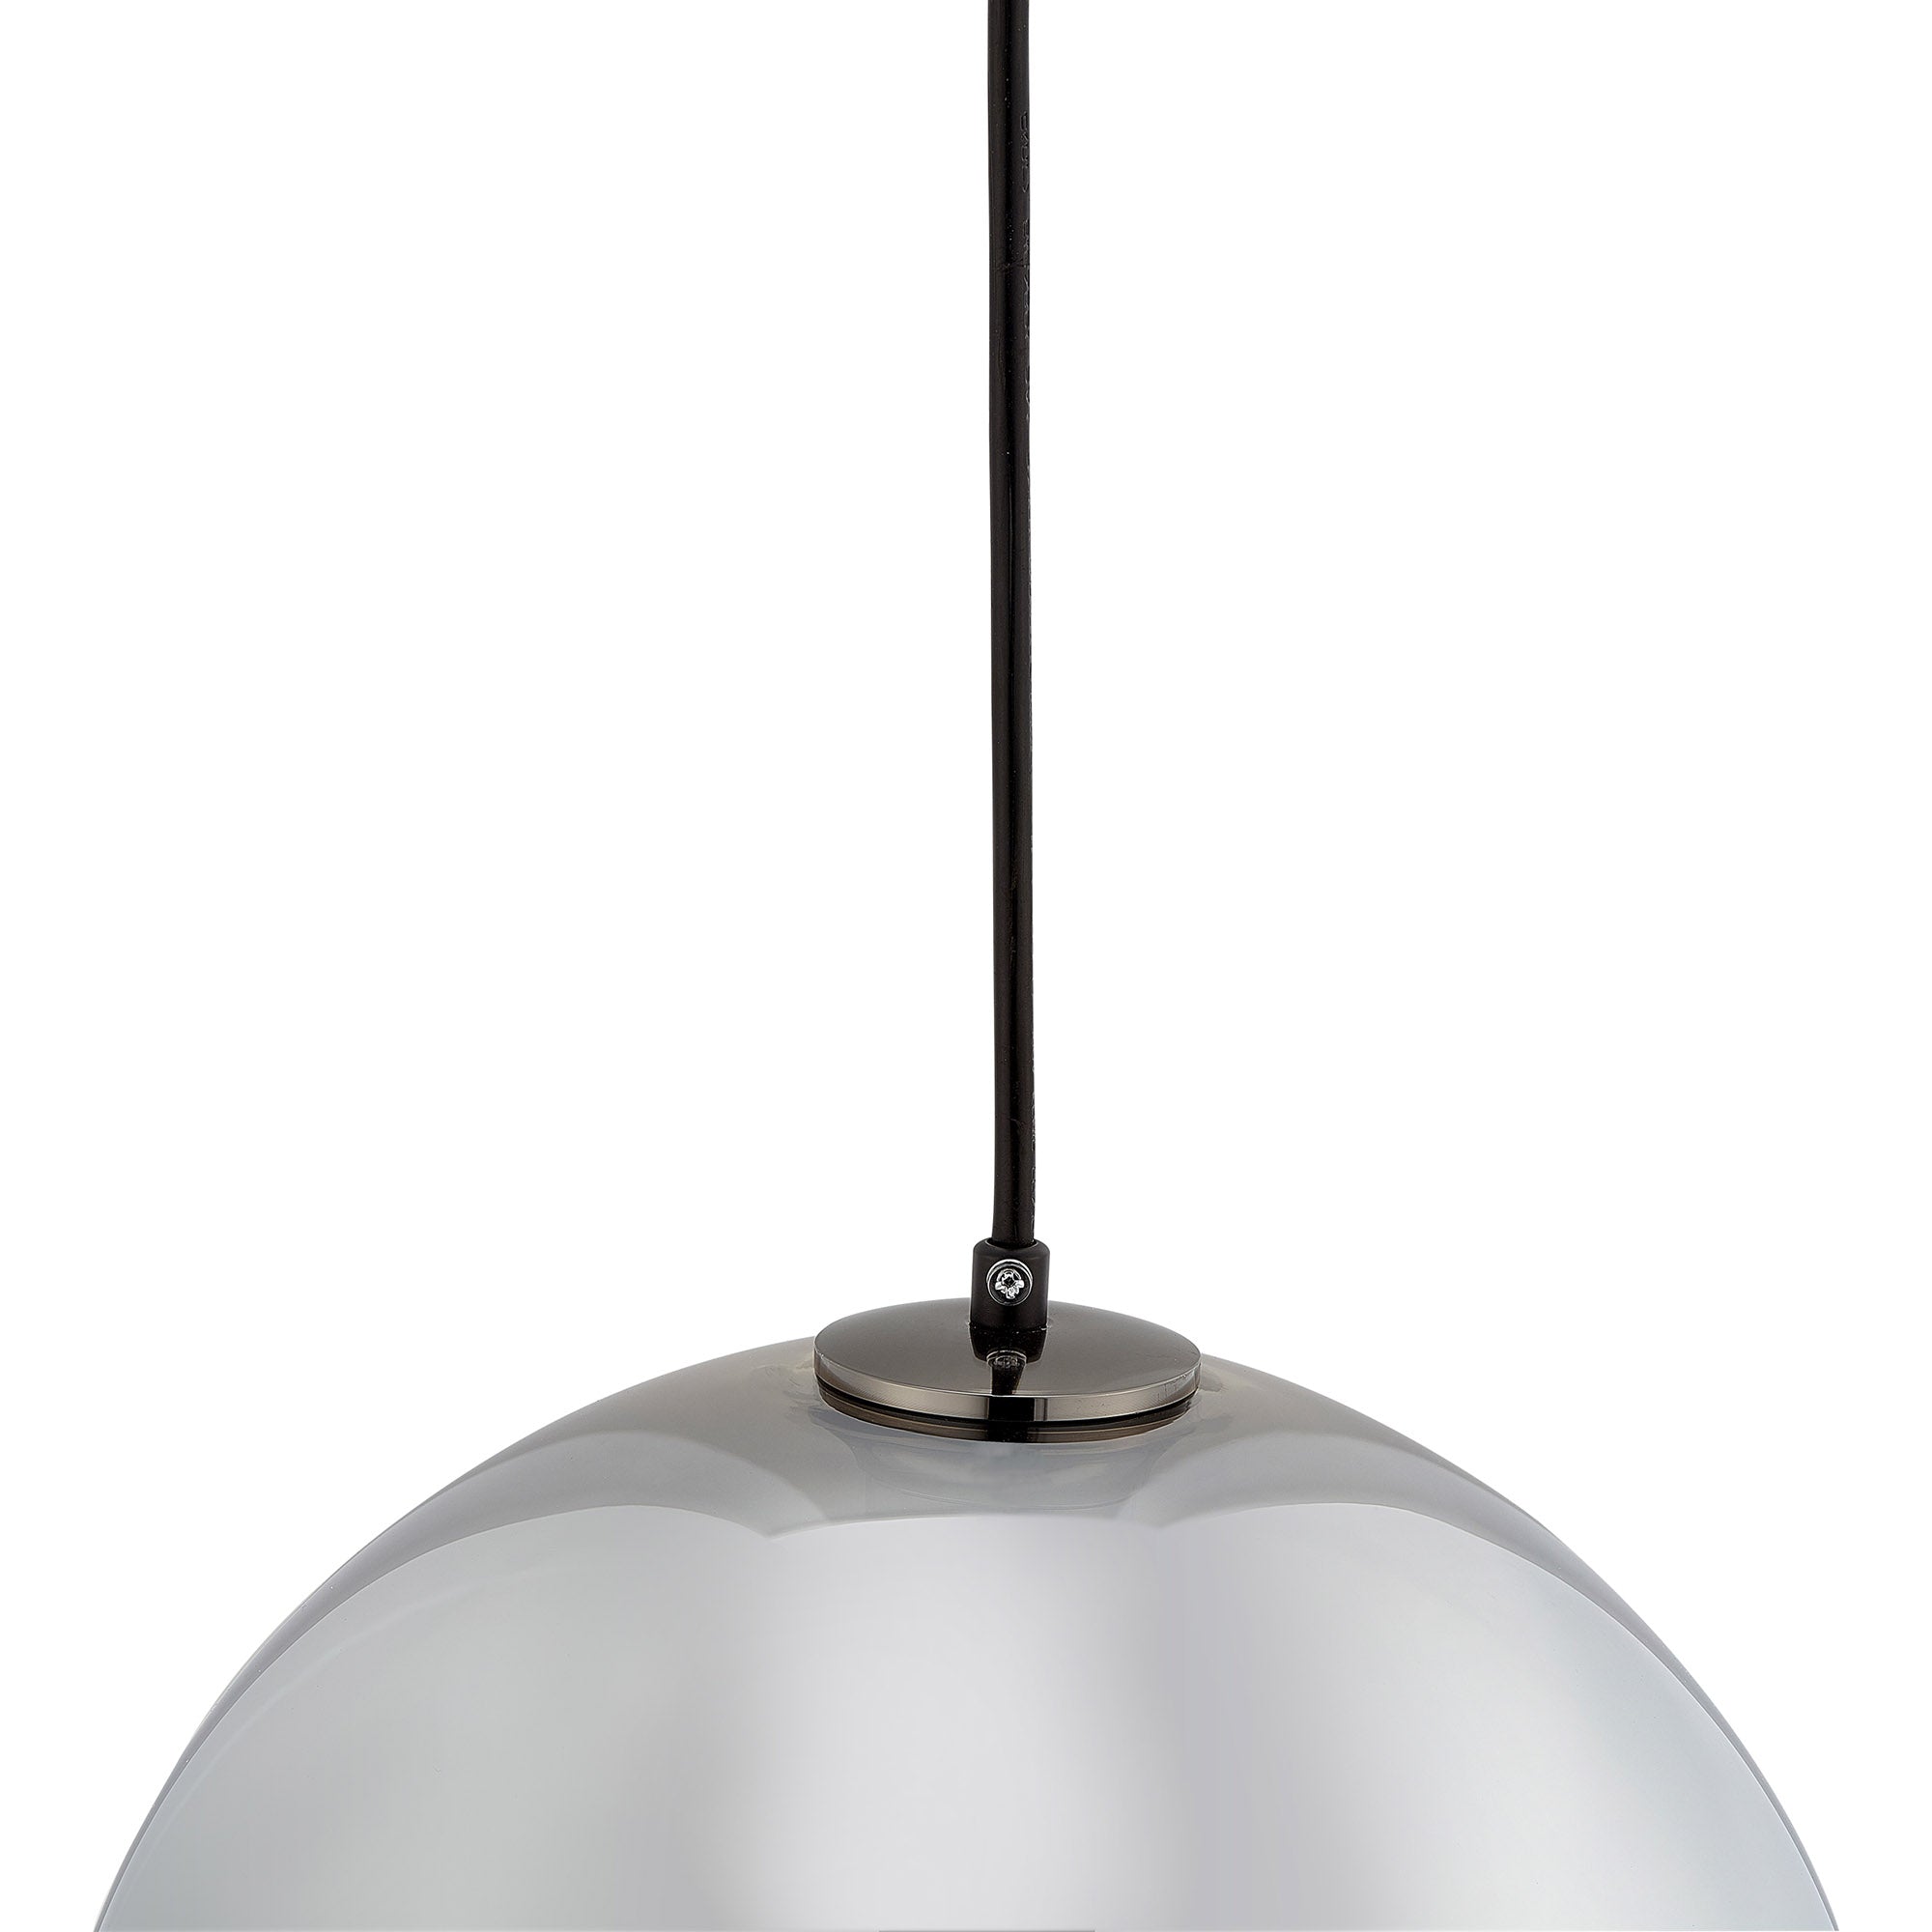 CARRO HOME Helos Big Sphere Glass Pendant Light – Chrome Gray